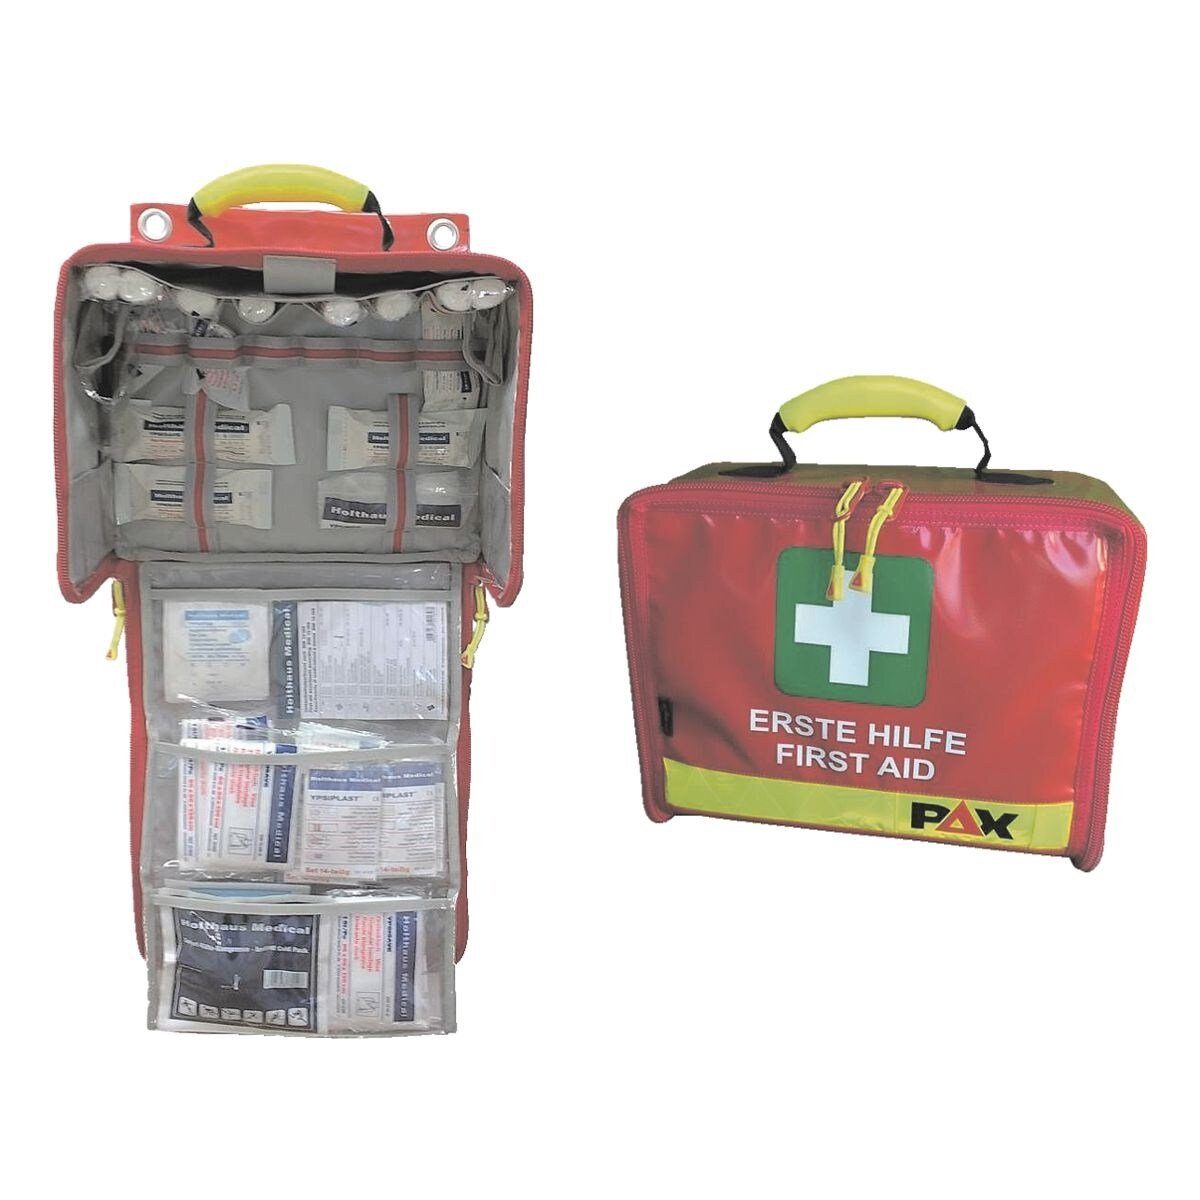 Holthaus Medical Erste-Hilfe-Set Paramedic, Wandtasche mit Füllsortiment nach  DIN 13169, mit Reflektorstreifen, Paramedic Wandtasche DIN13169